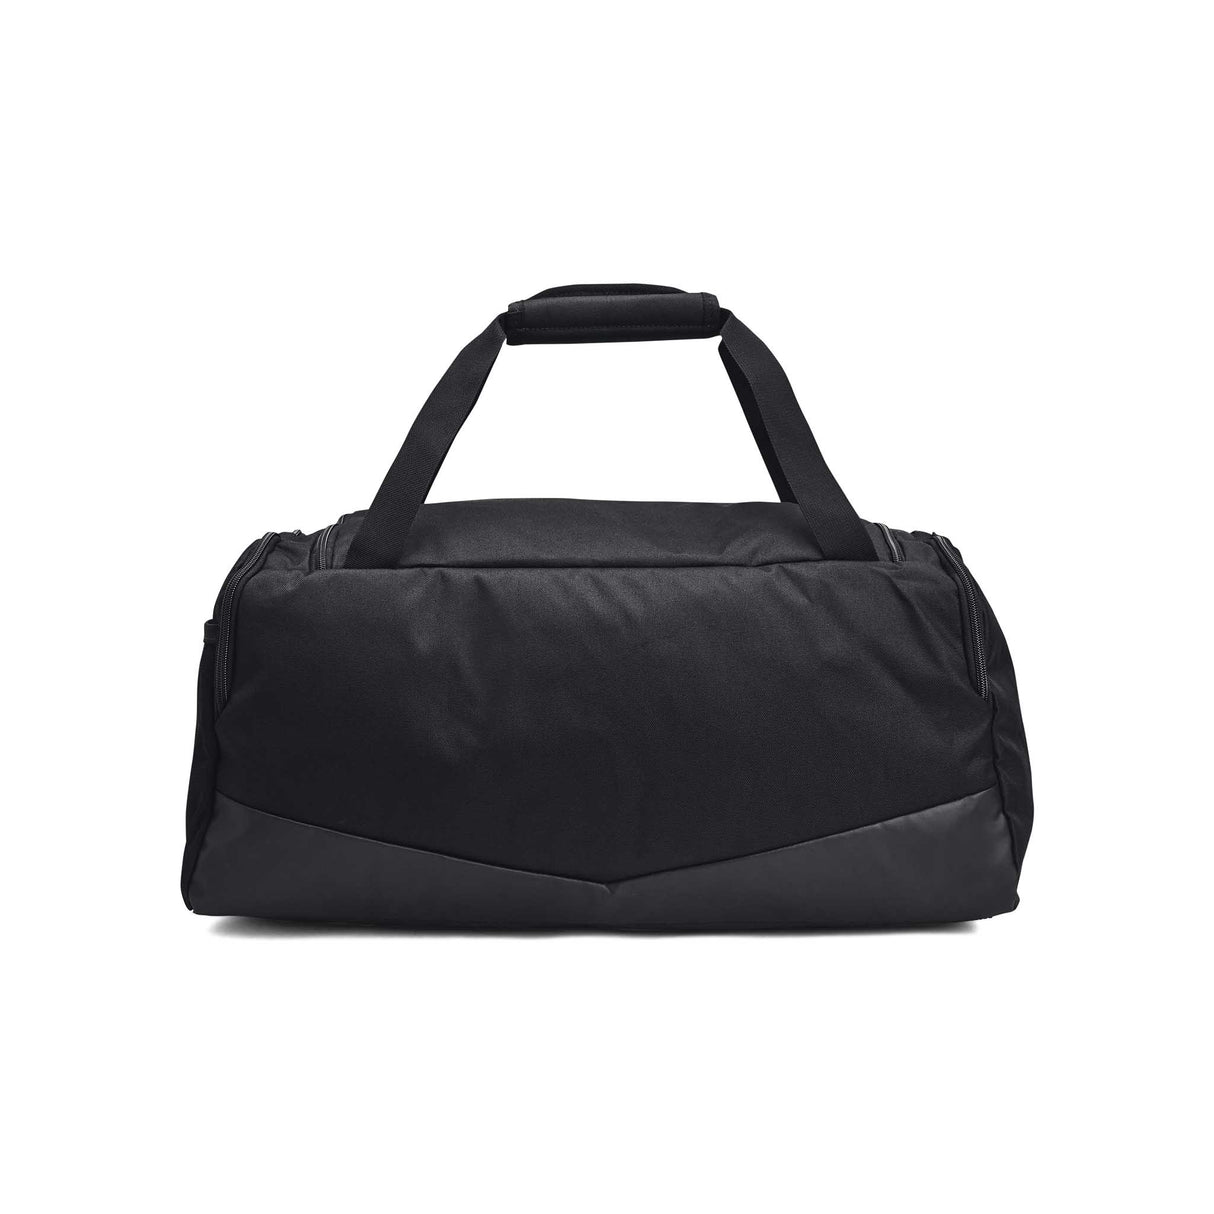 UA Undeniable 5.0 Duffle sac de sport - Small - dos -noir / noir / argent métallique